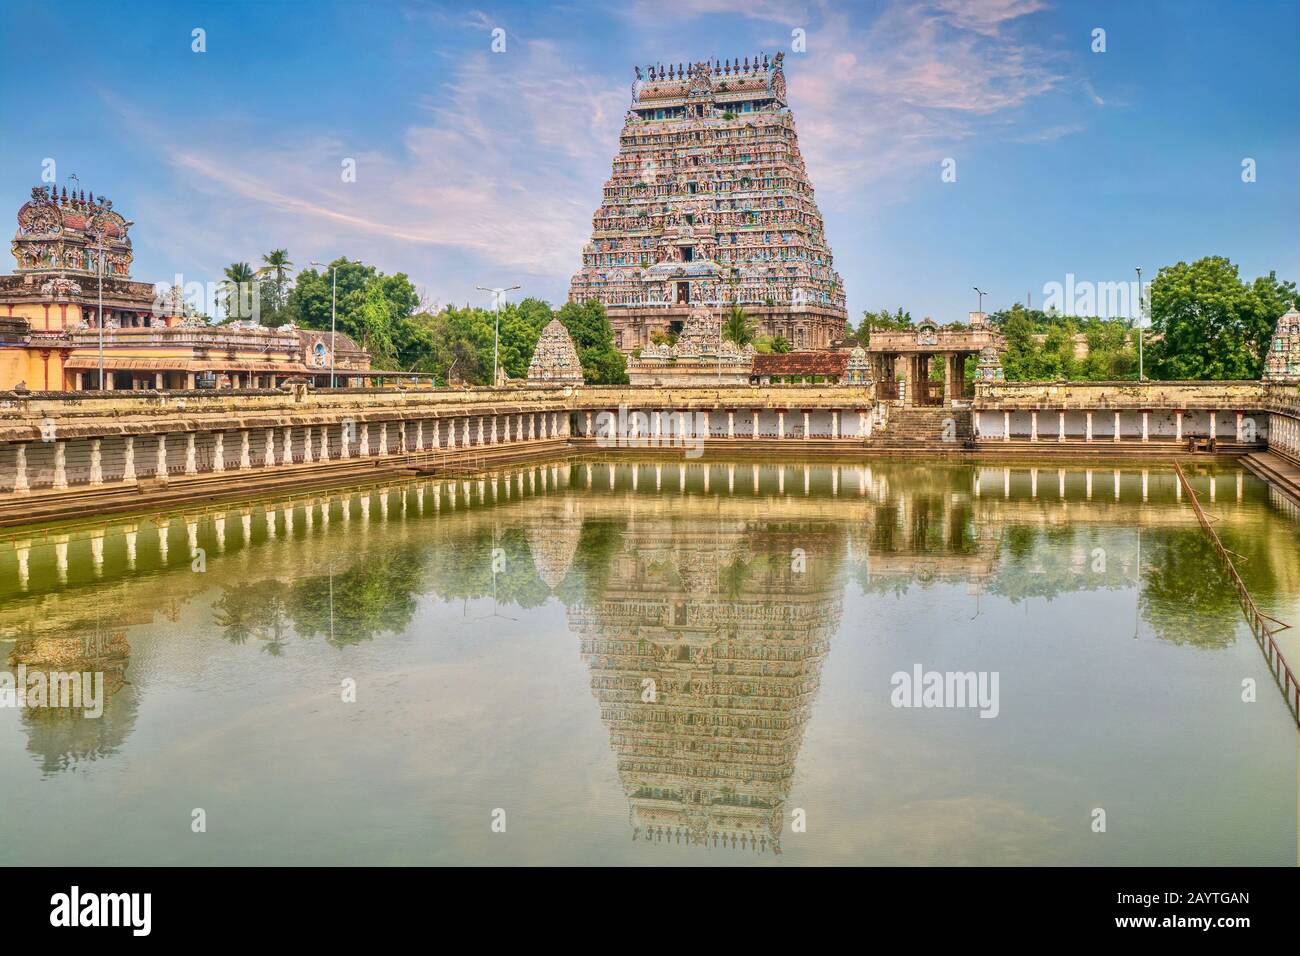 Ein großer Wasserpool, der den majestätischen Turm des Nataraja-Tempels in Chidambaram, Tamil Nadu, Südindien, widerspiegelt. Stockfoto